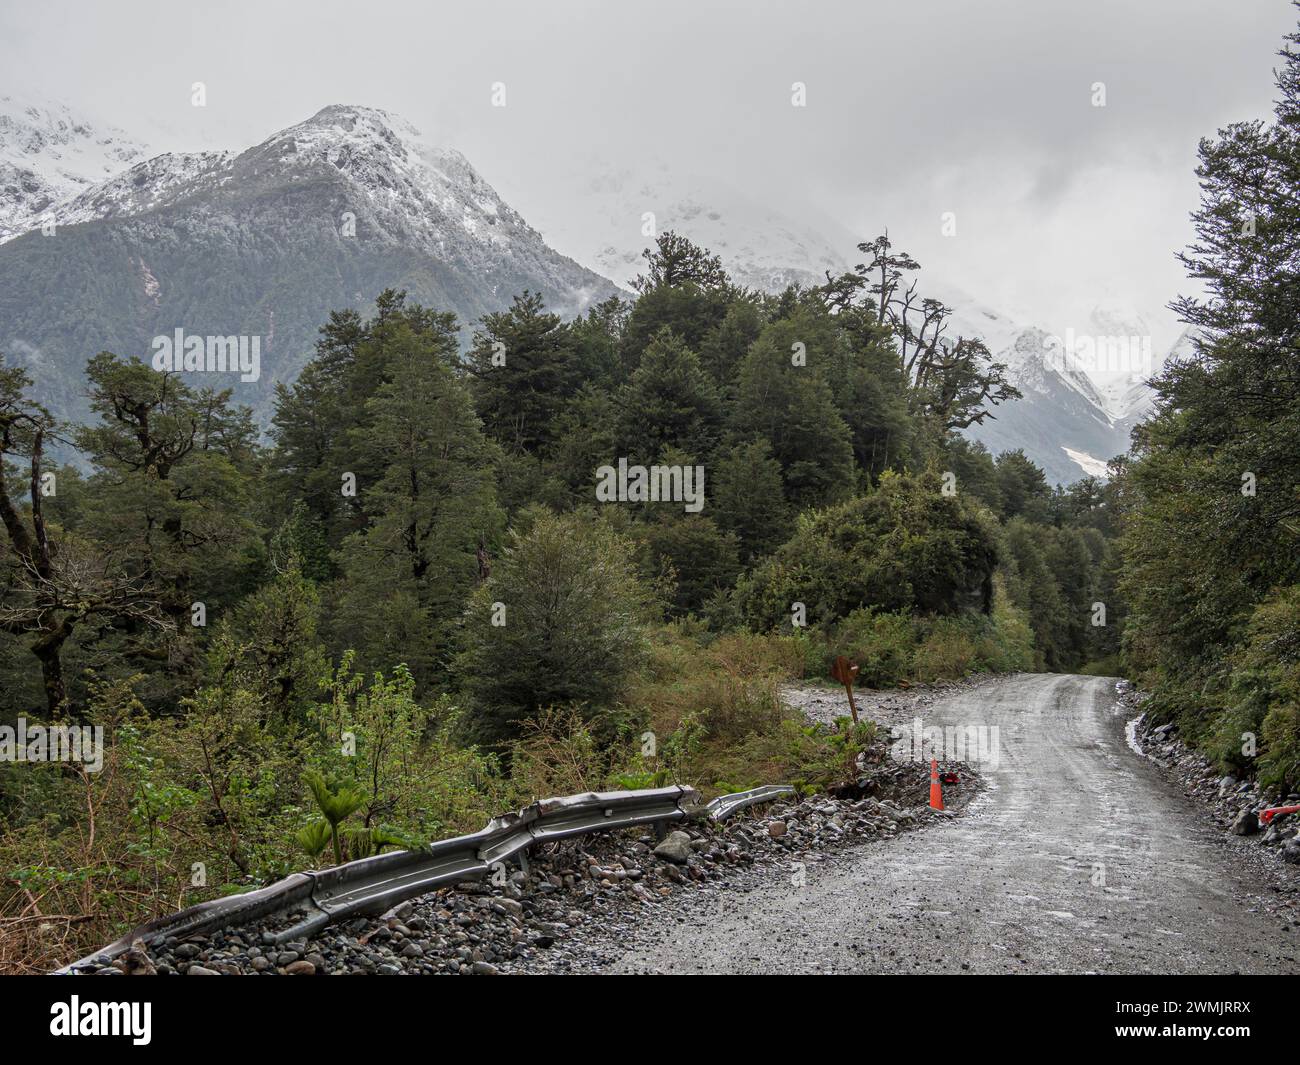 Route Carretera Austral sud du village Puyuhuapi, col de montagne, route de gravier, chutes de neige, Patagonie, Chili Banque D'Images